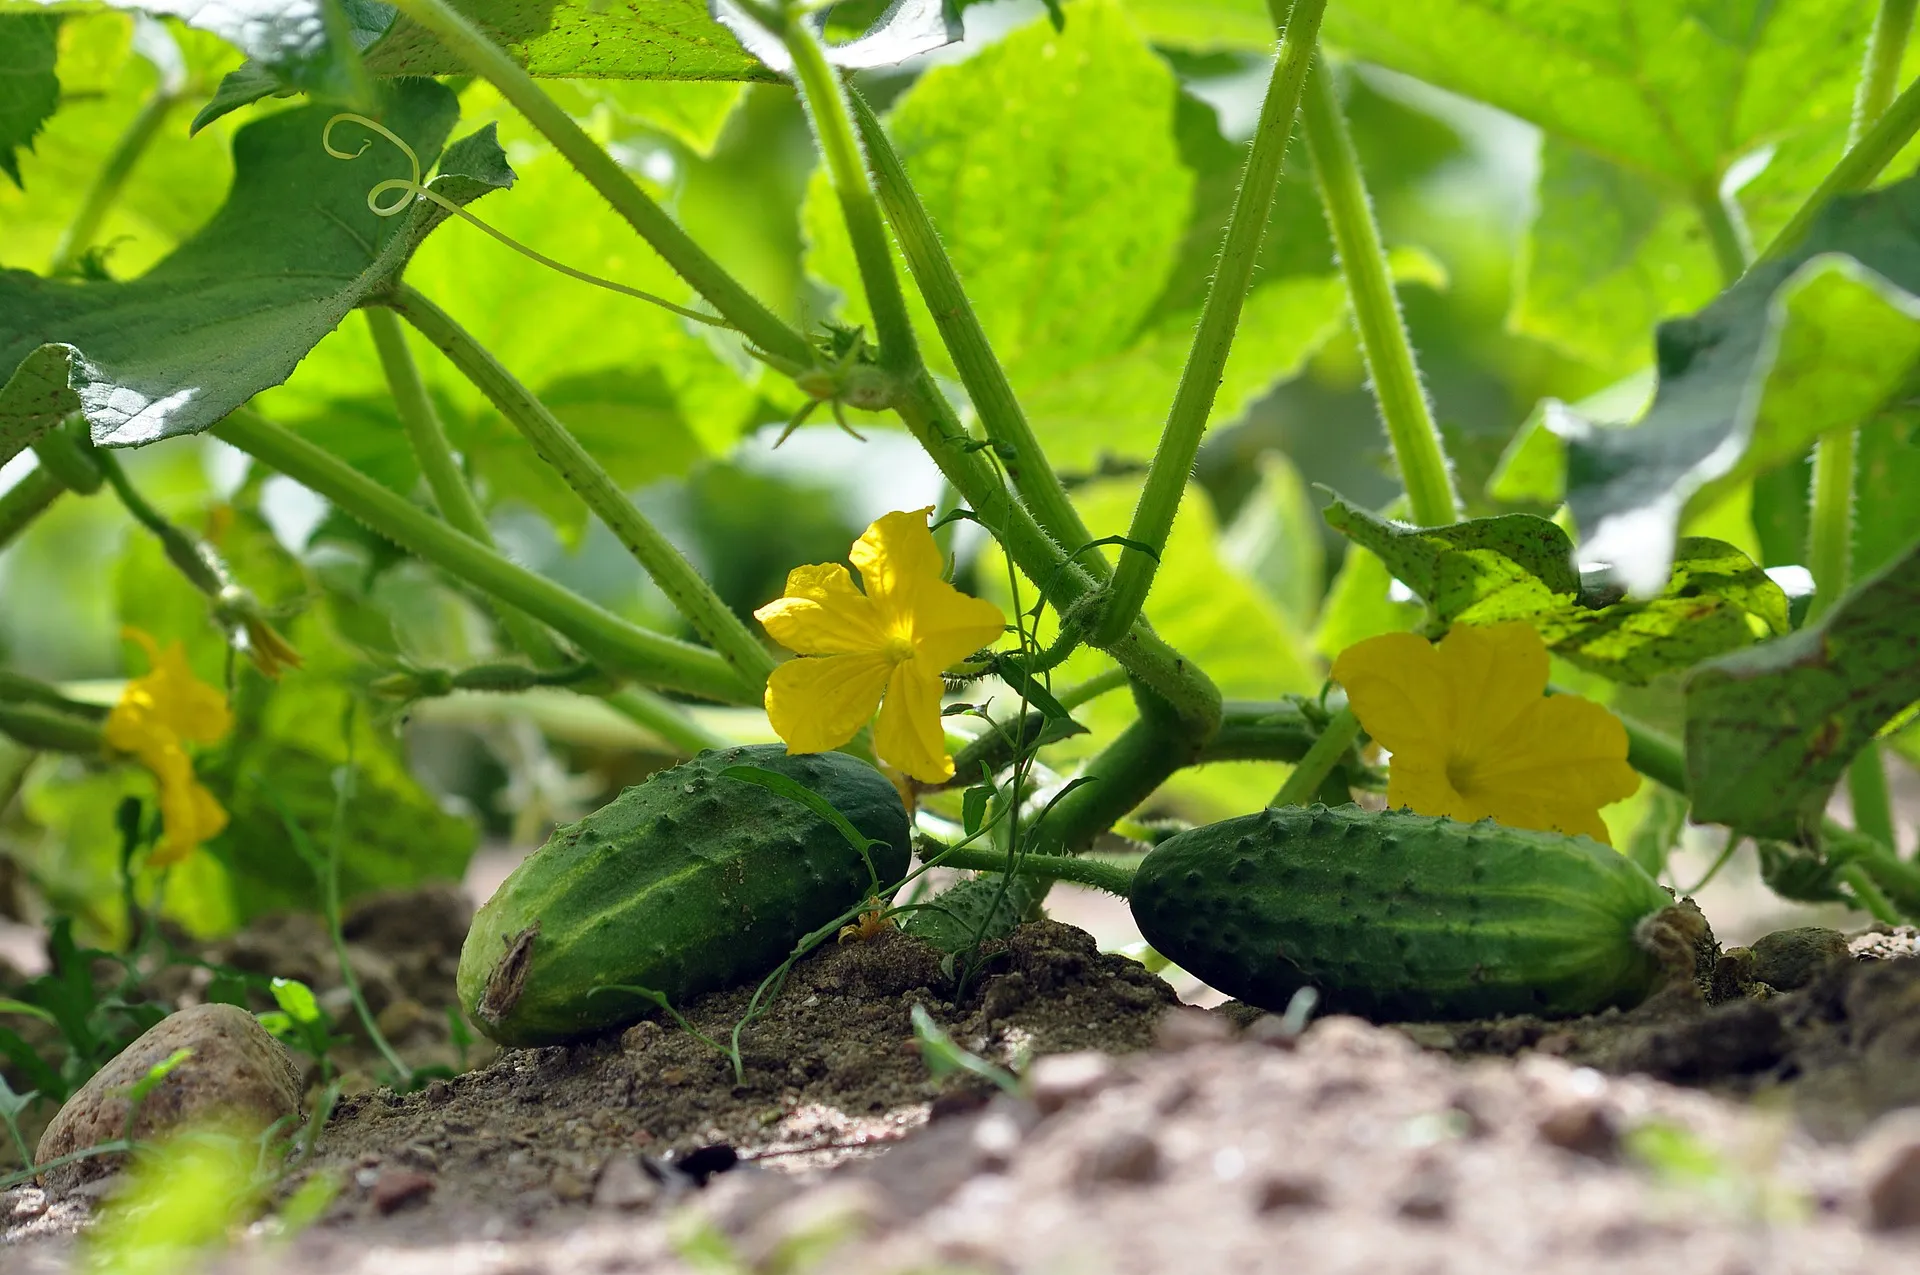 Nuttige tips voor tuinders: De enige voeding die nodig is voor komkommerplanten